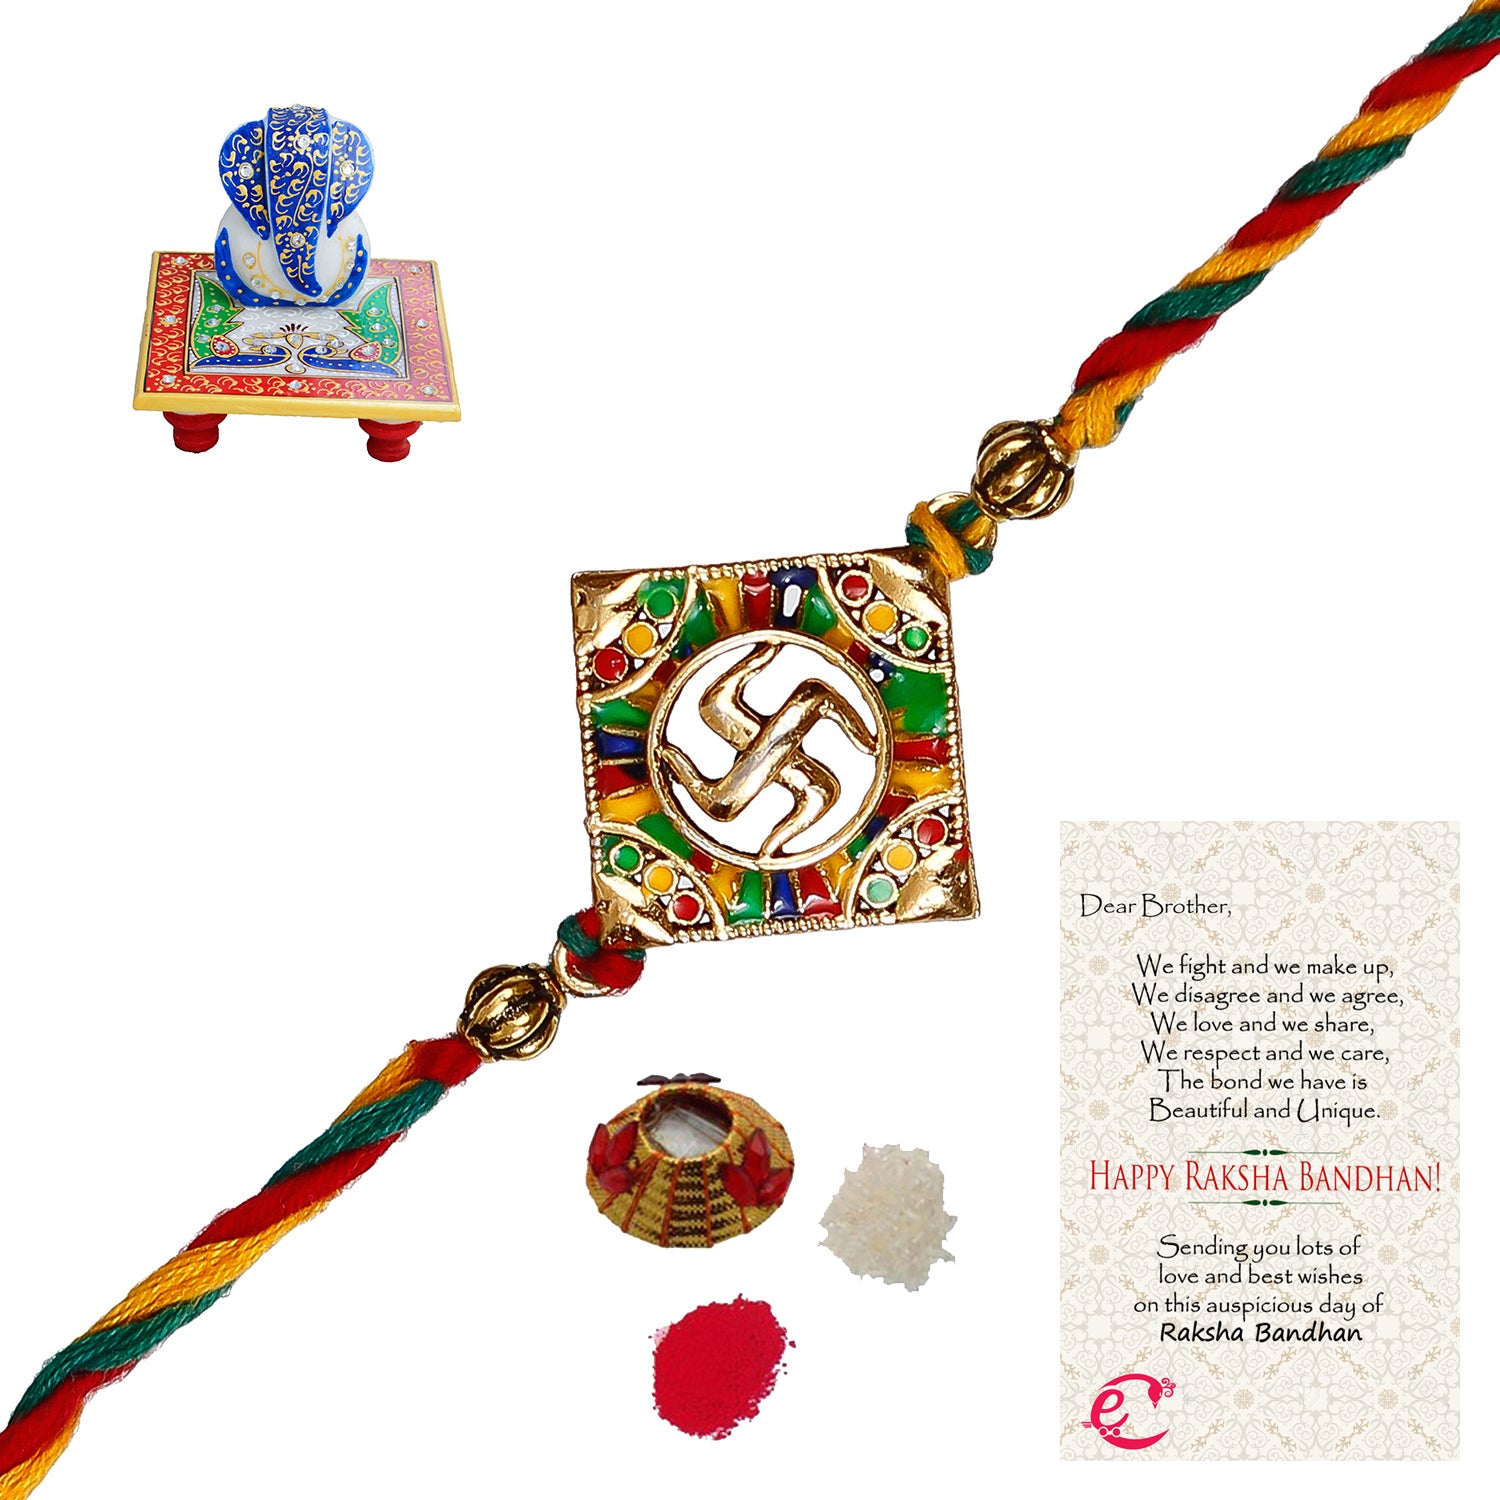 Designer Religious Swastik Rakhi with Lord Ganesha on Marble Chowki and Roli Tikka Matki, Best Wishes Greeting Card